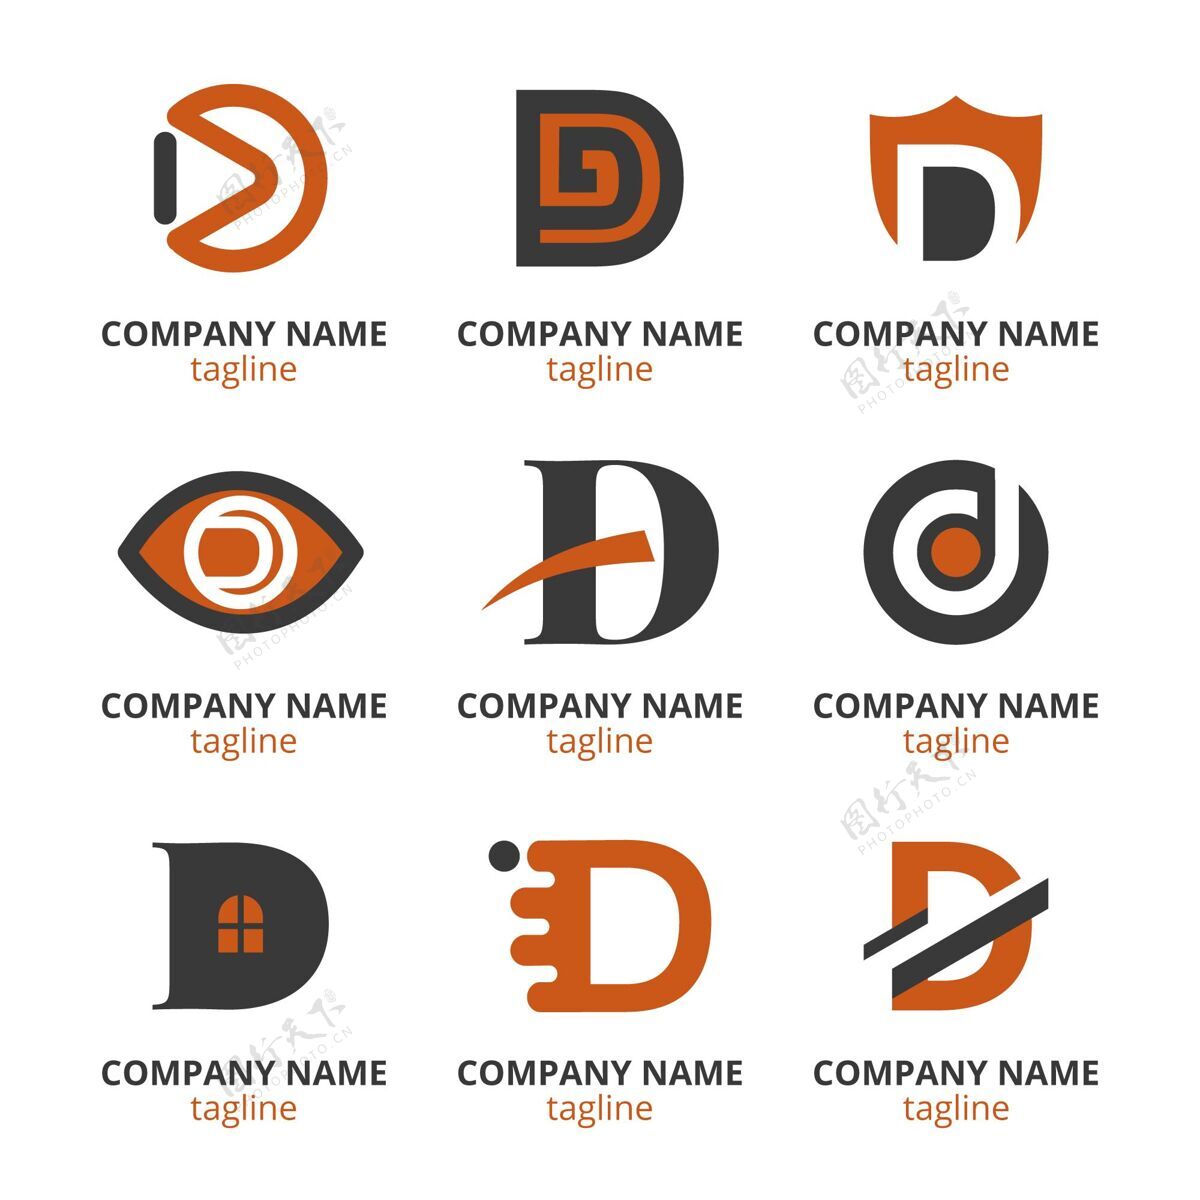 公司平面设计d标志系列企业标识公司标志企业